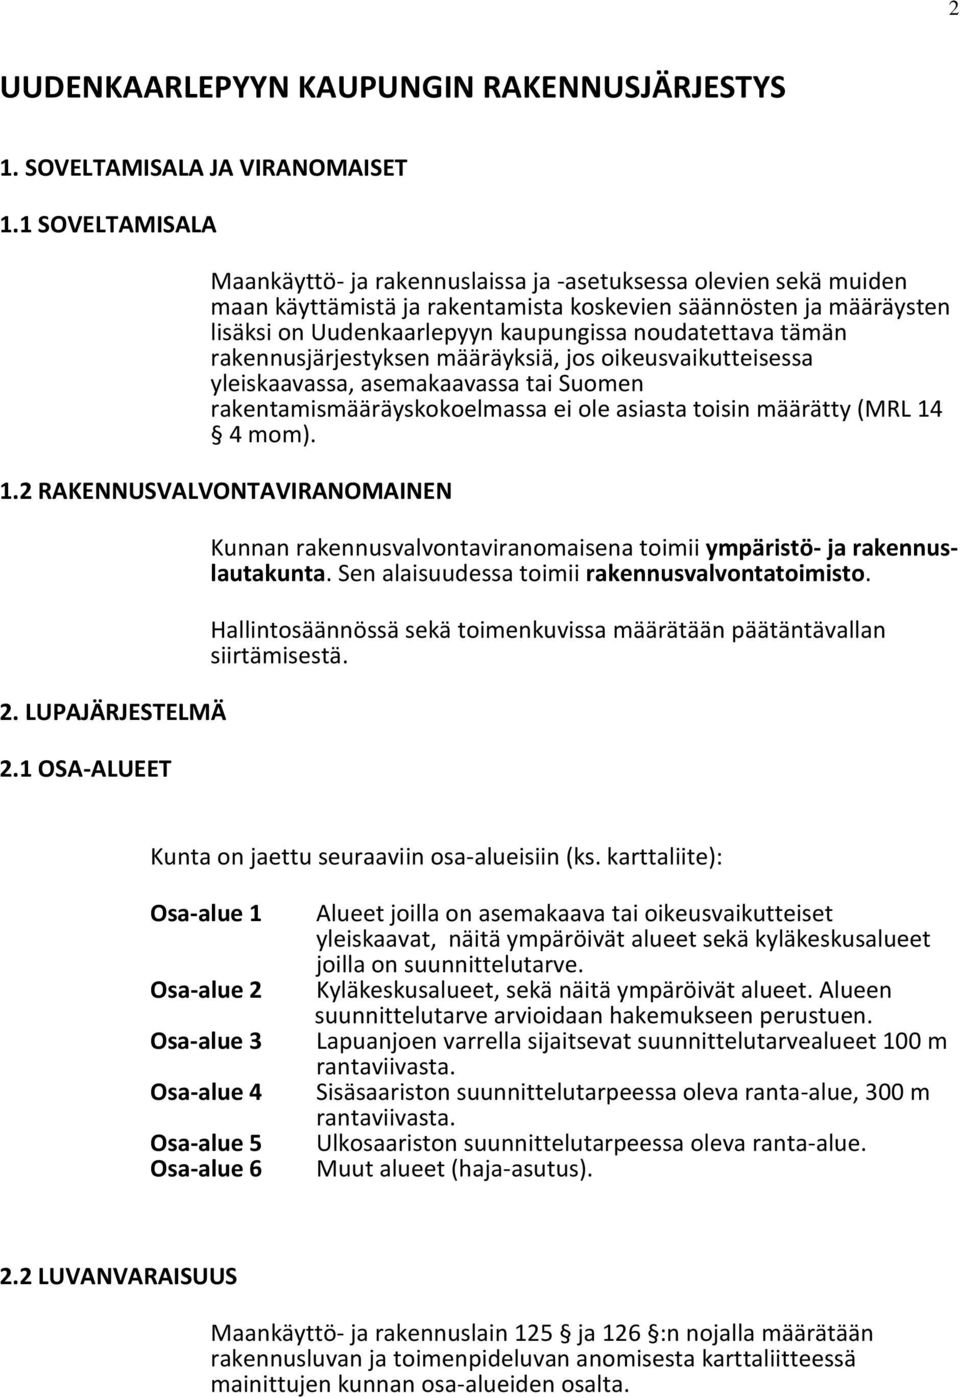 tämän rakennusjärjestyksen määräyksiä, jos oikeusvaikutteisessa yleiskaavassa, asemakaavassa tai Suomen rakentamismääräyskokoelmassa ei ole asiasta toisin määrätty (MRL 14 4 mom). 1.2 KENNUSVALVONTAVINOMAINEN 2.